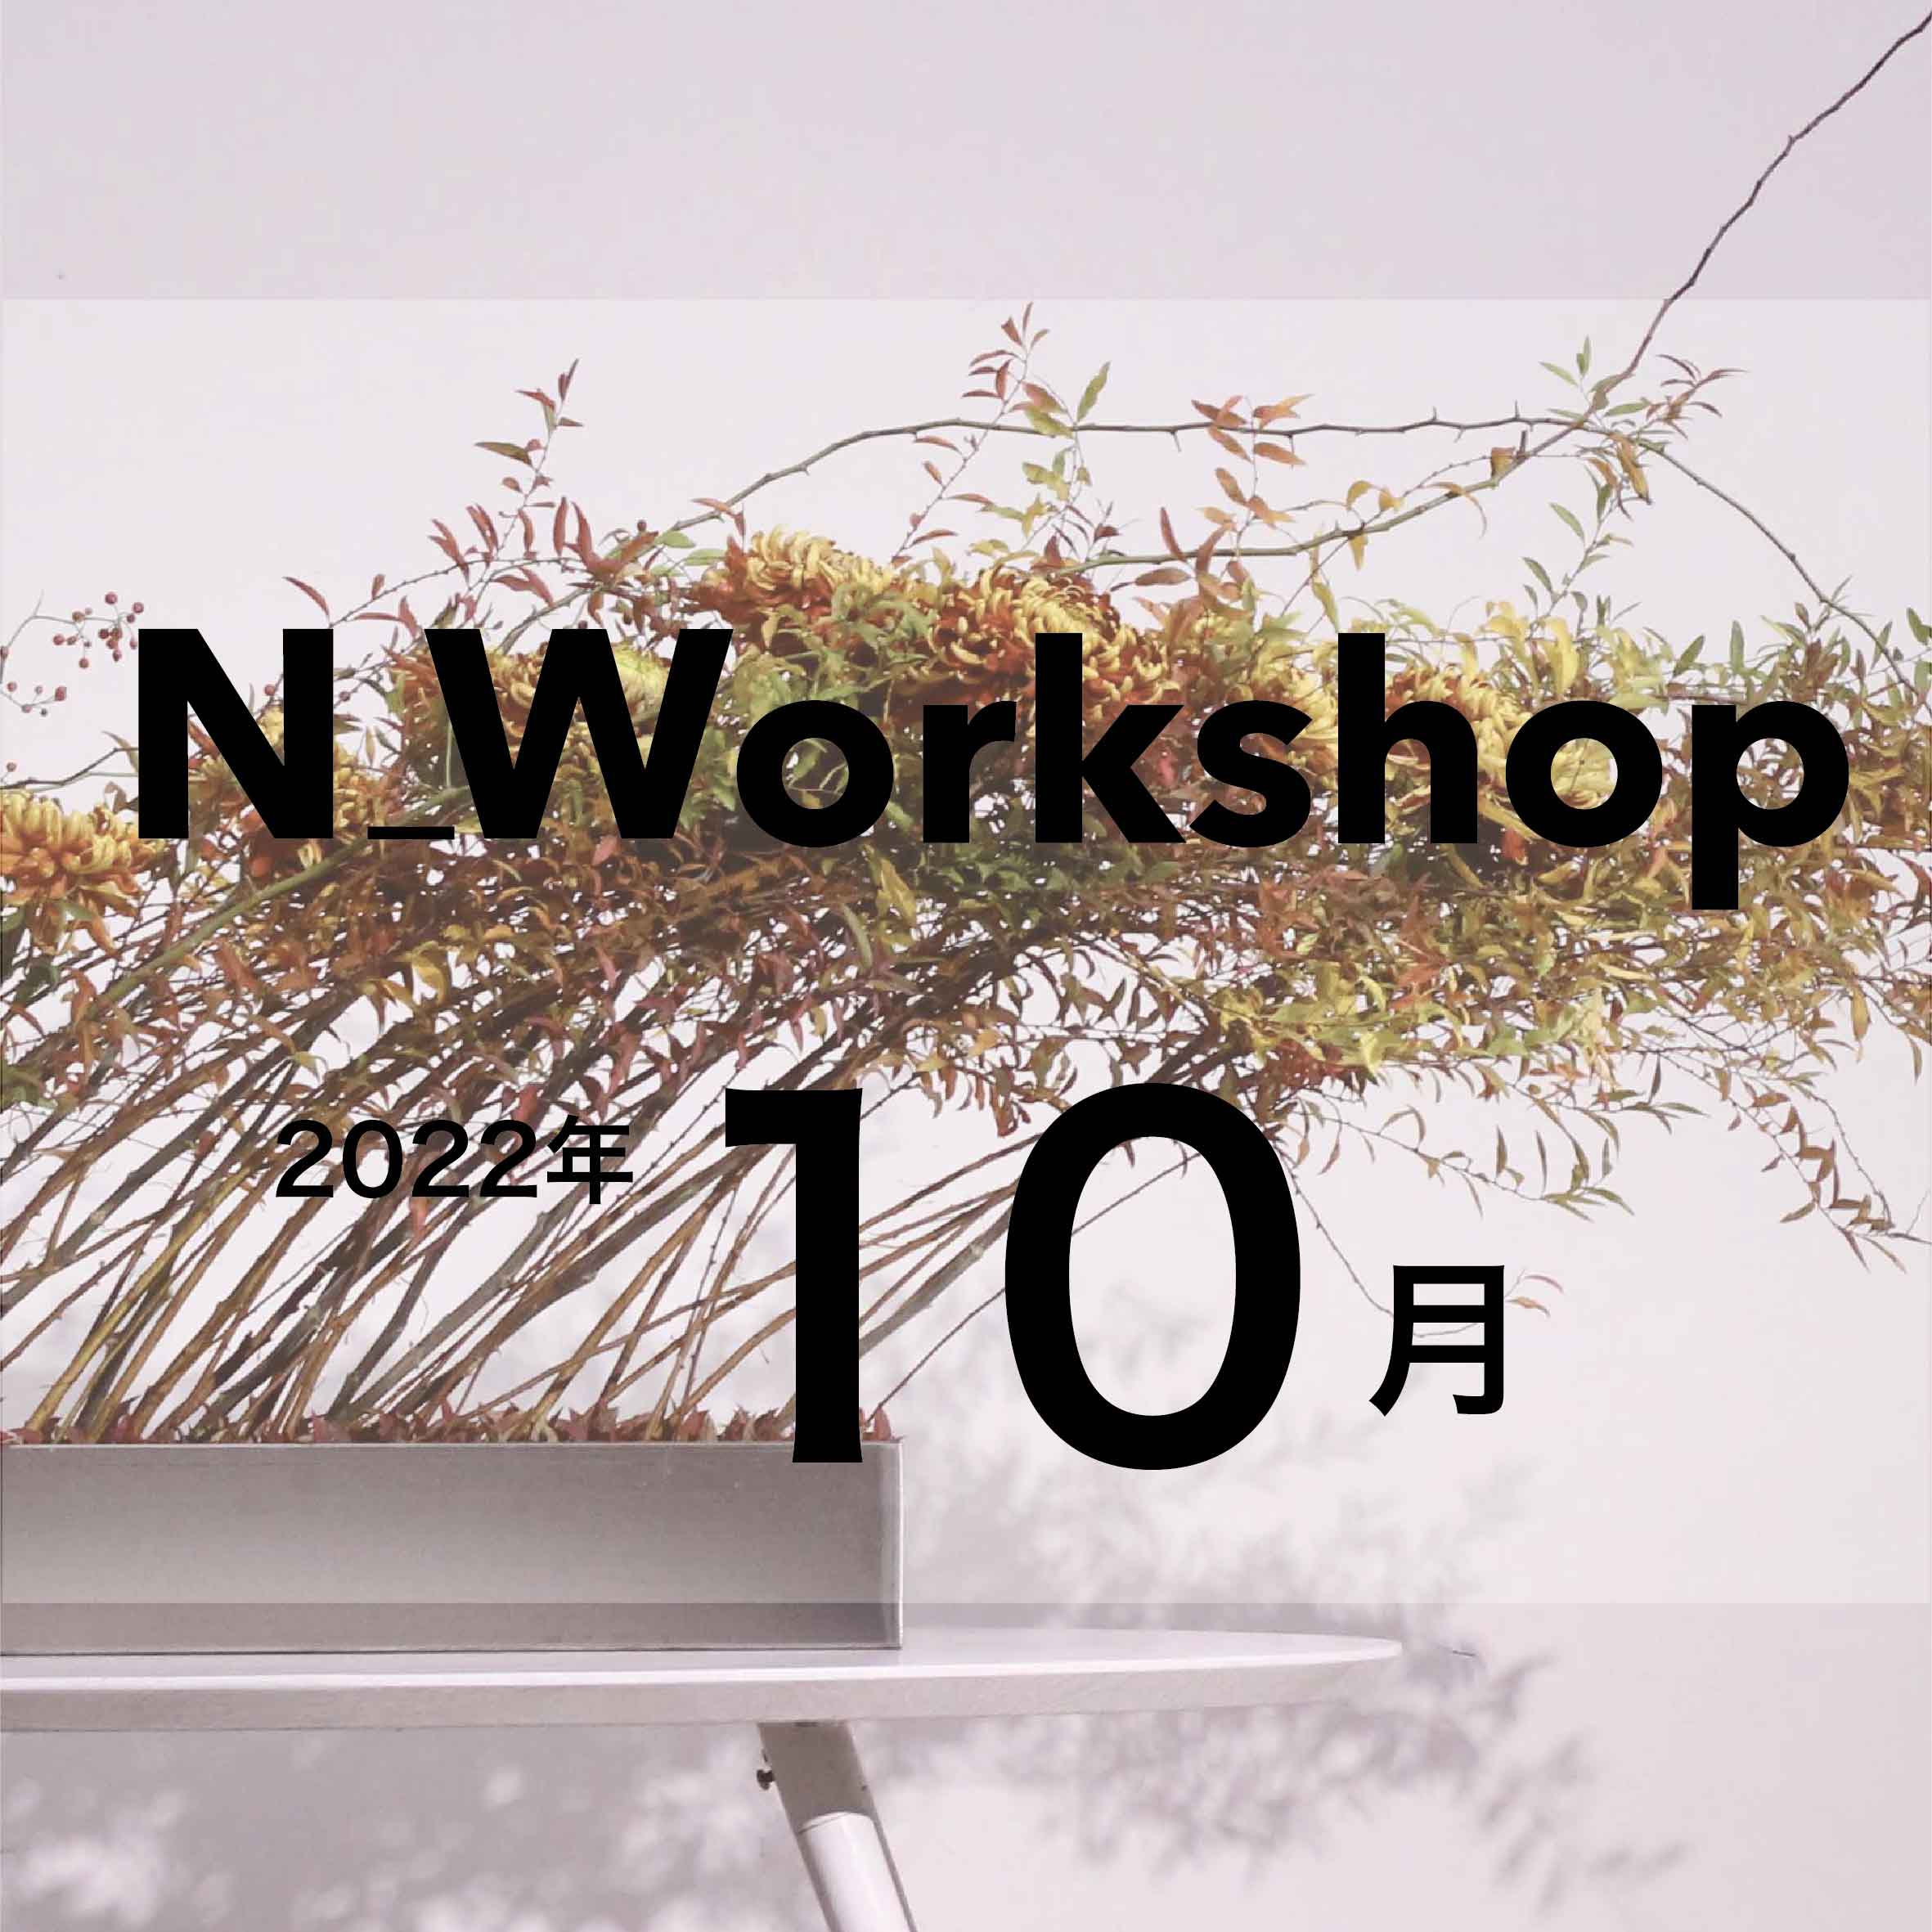 N_Workshop 10月の参加者募集中！